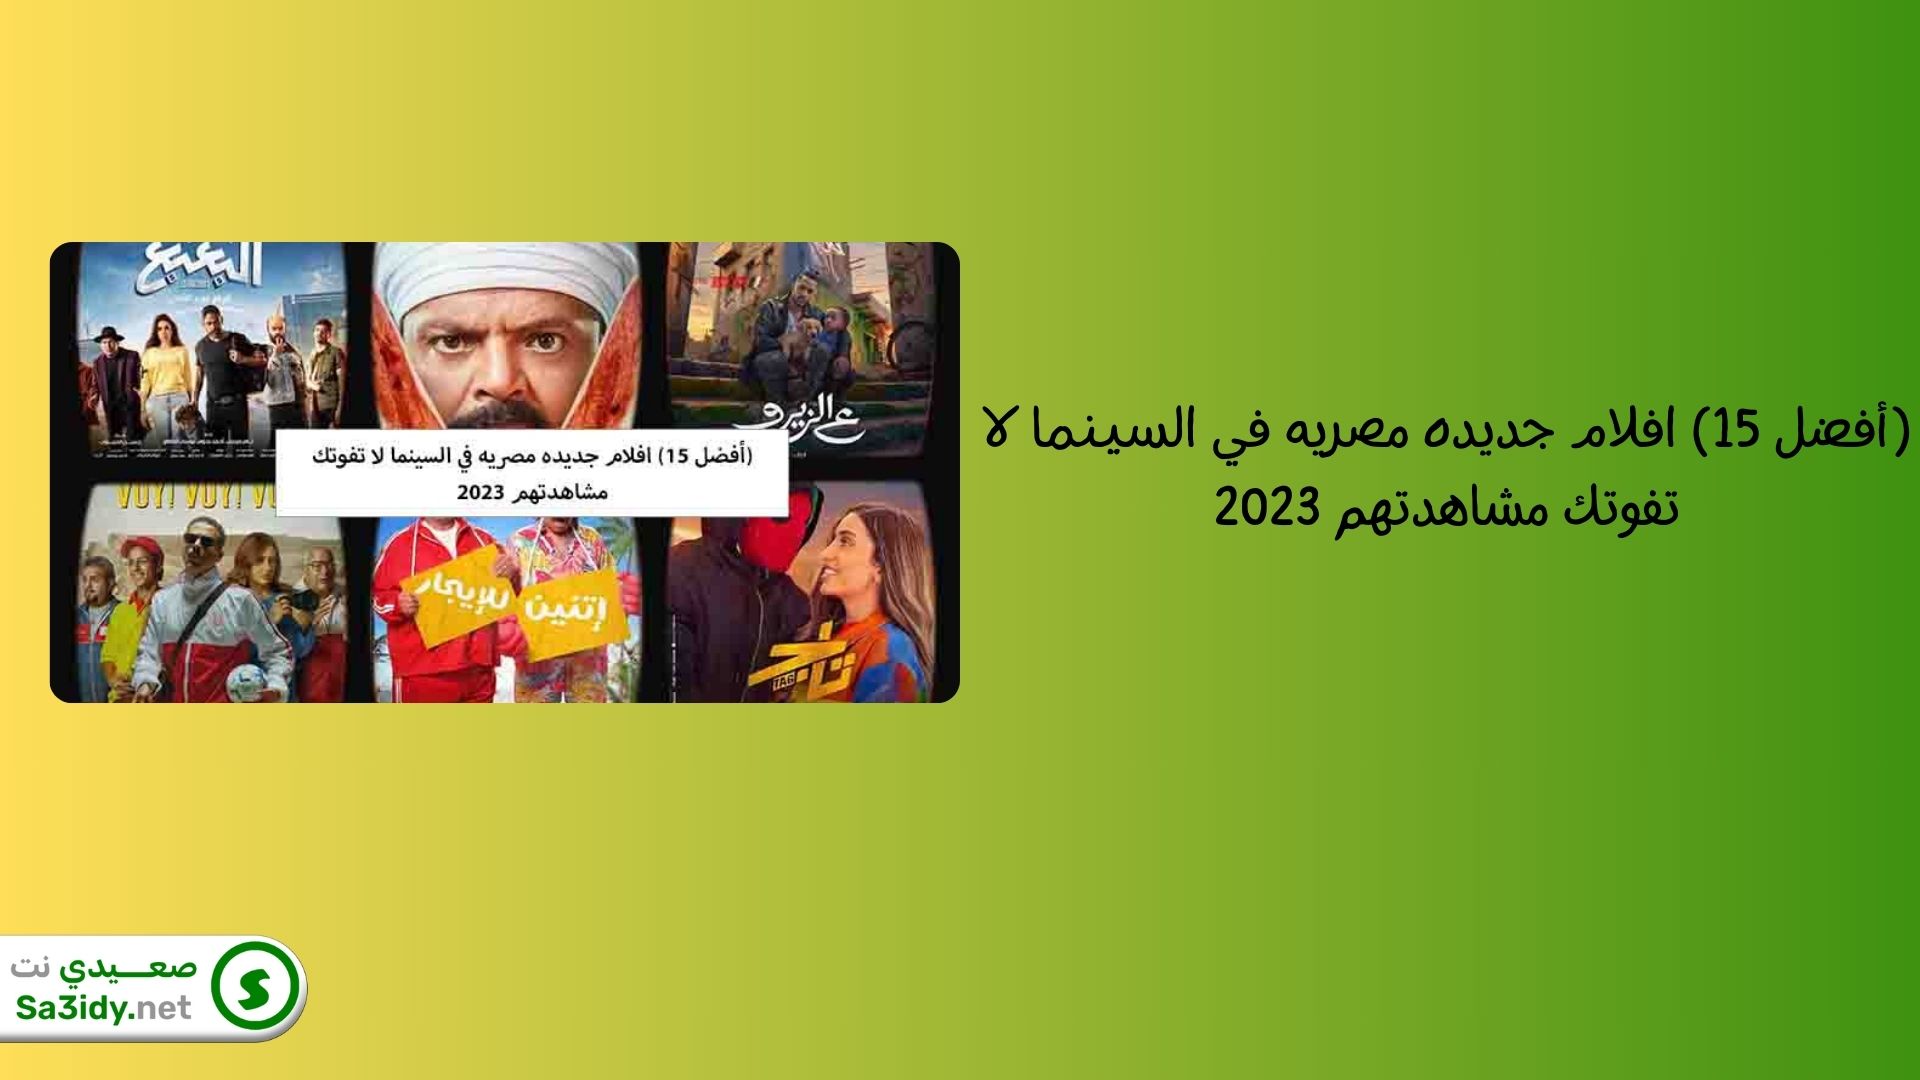 (أفضل 15) افلام جديده مصريه في السينما لا تفوتك 2023